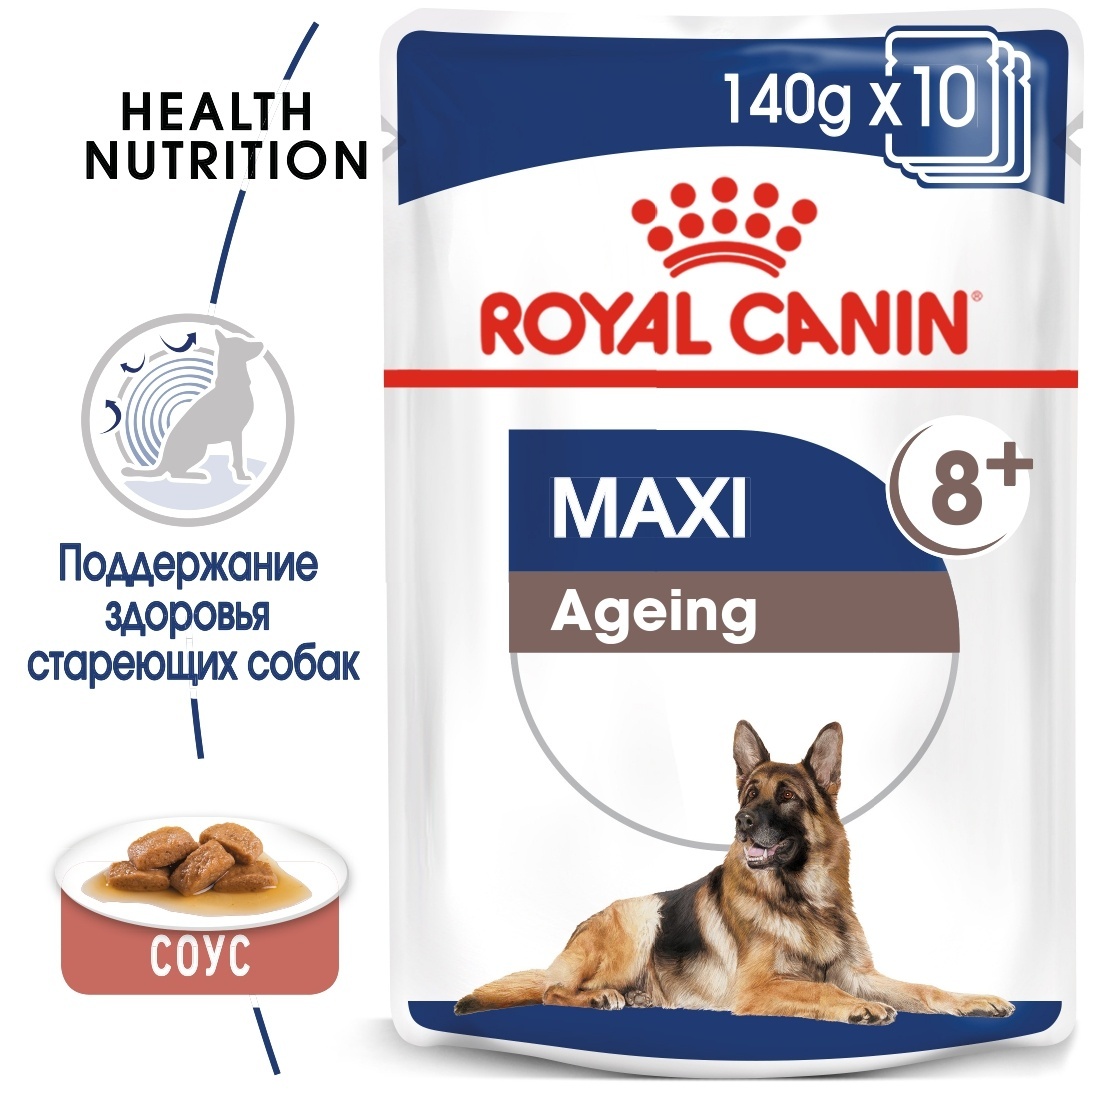 Royal canin кусочки в соусе. Роял Канин Maxi ageing 8+. Royal Canin ageing +12 для собак крупных пород. Royal Canin Maxi ageing. Роял Канин макси для пожилых собак.